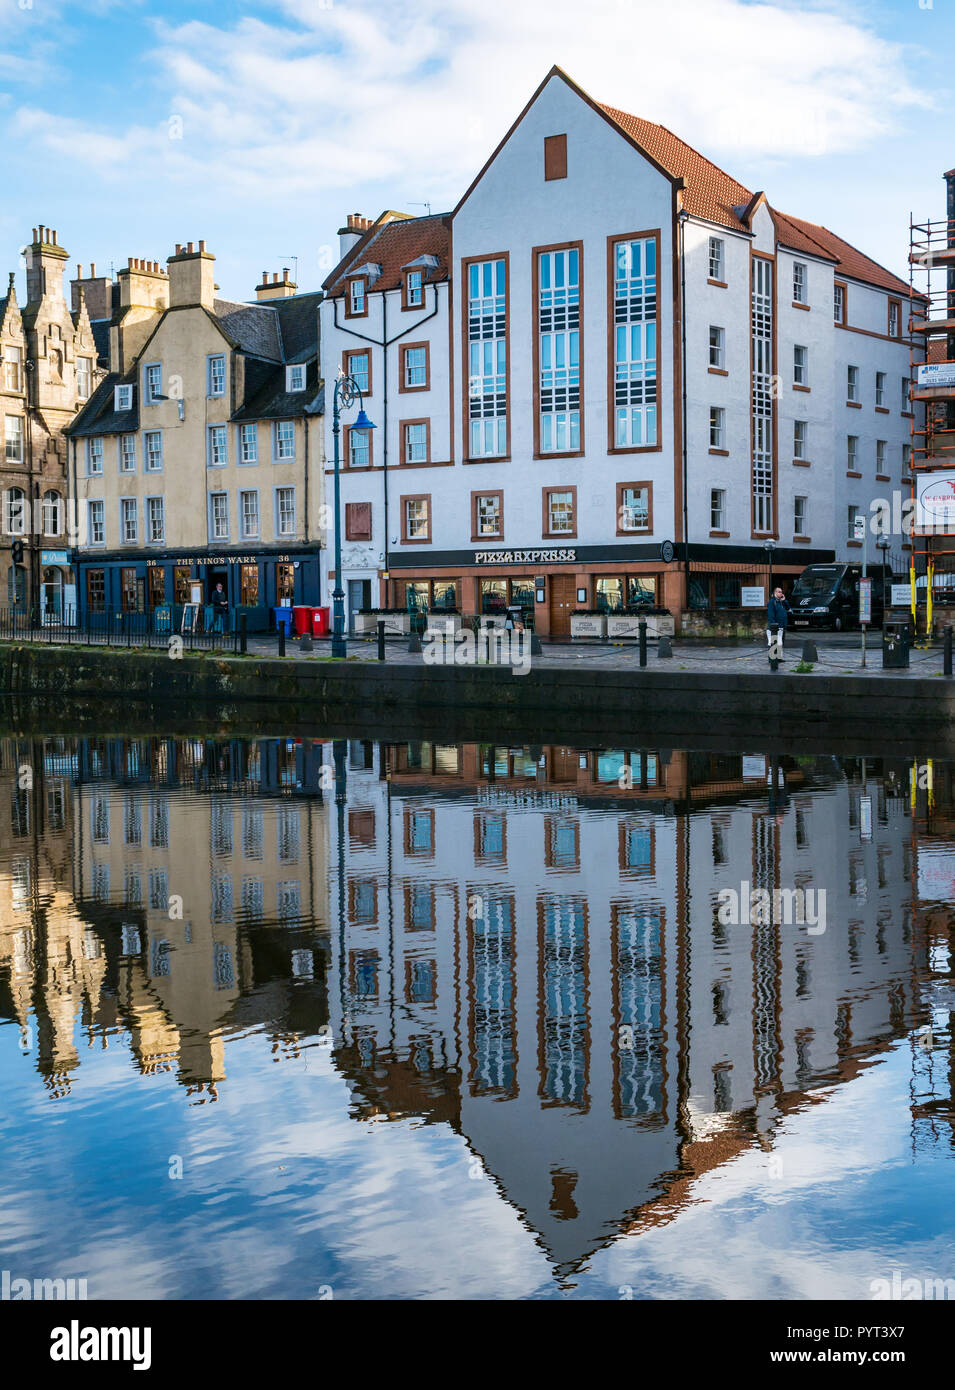 Alte Gebäude in Wasser des Leith mit Pizza Express Restaurant und King's Wark Pub an einem sonnigen Tag, das Ufer, Leith, Edinburgh, Schottland, UK wider Stockfoto